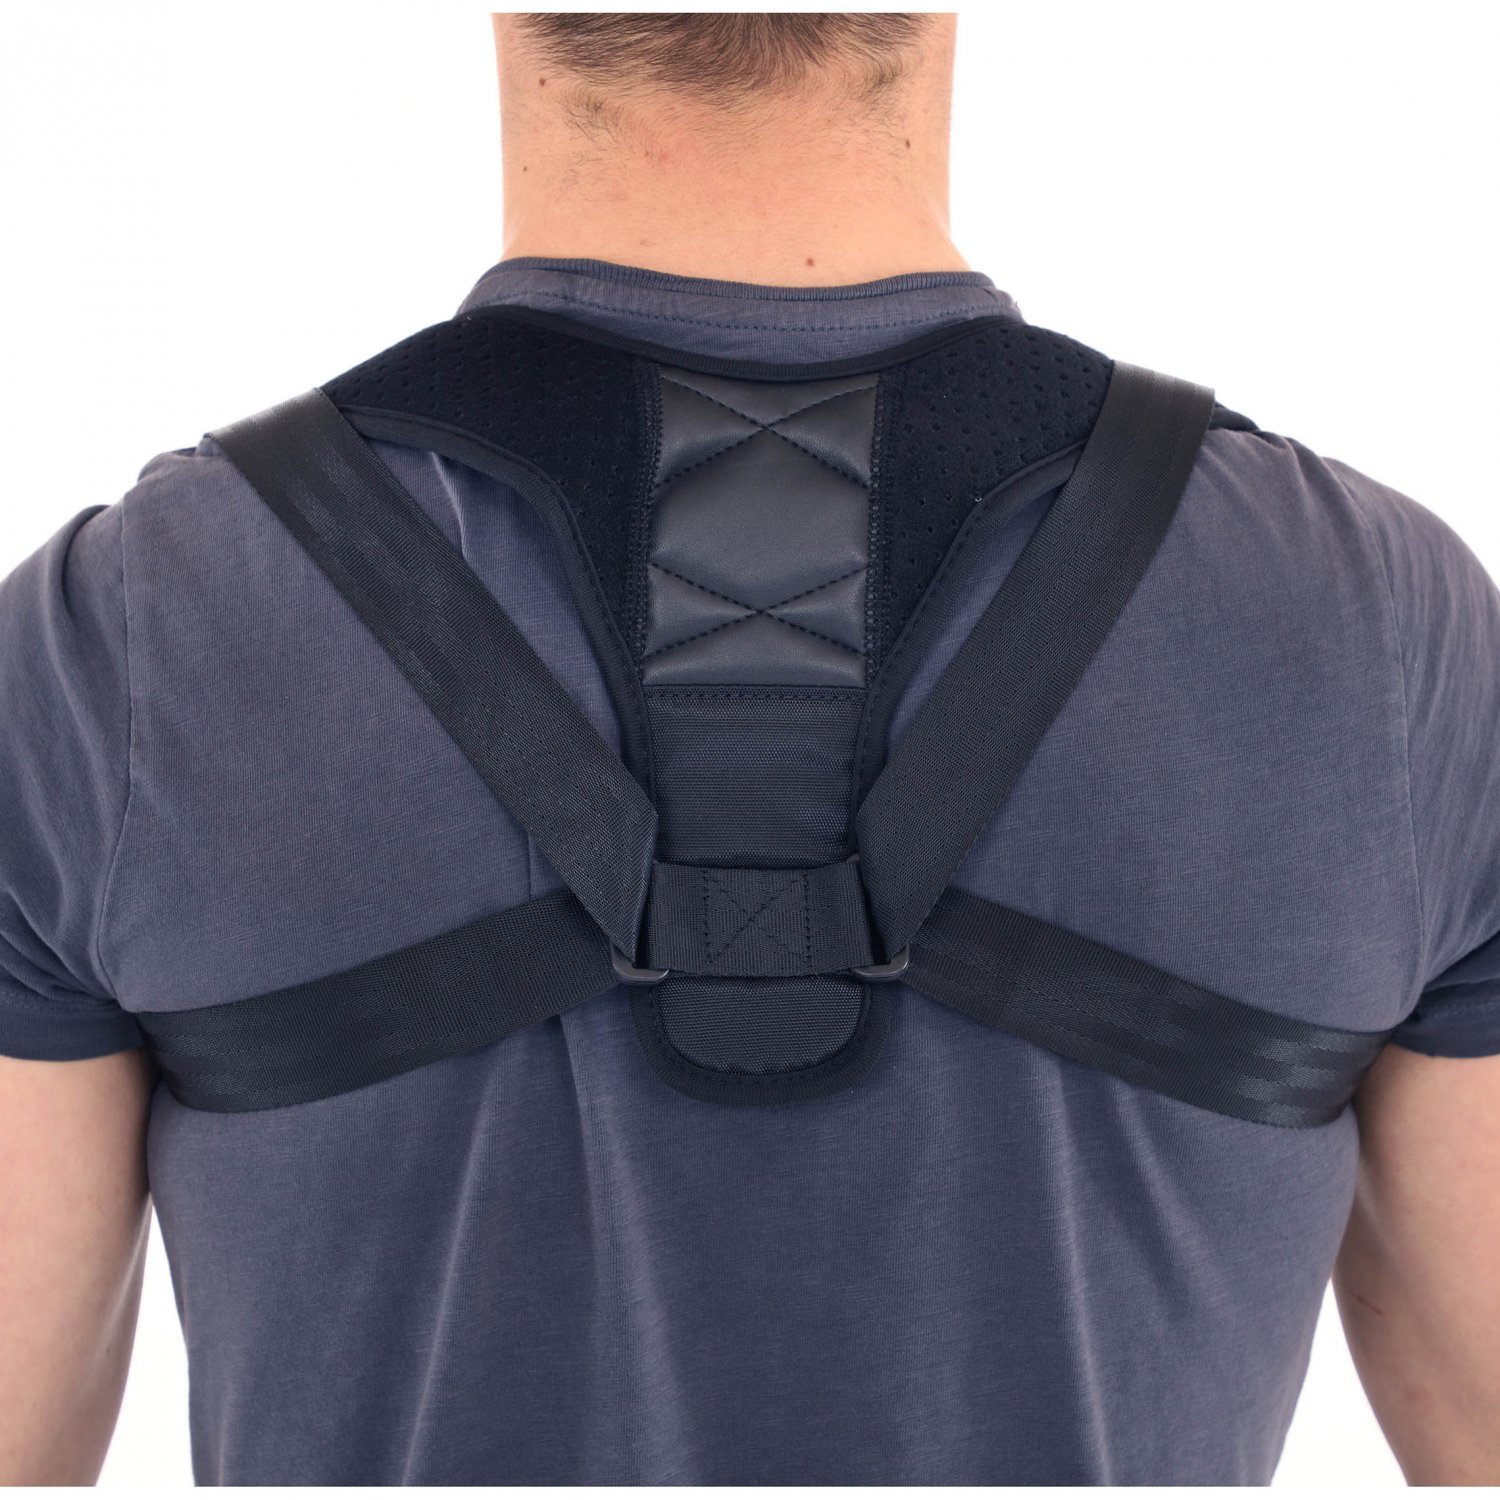 Adjustable Sports Back Shoulder Brace, Relieve Shoulder Pain